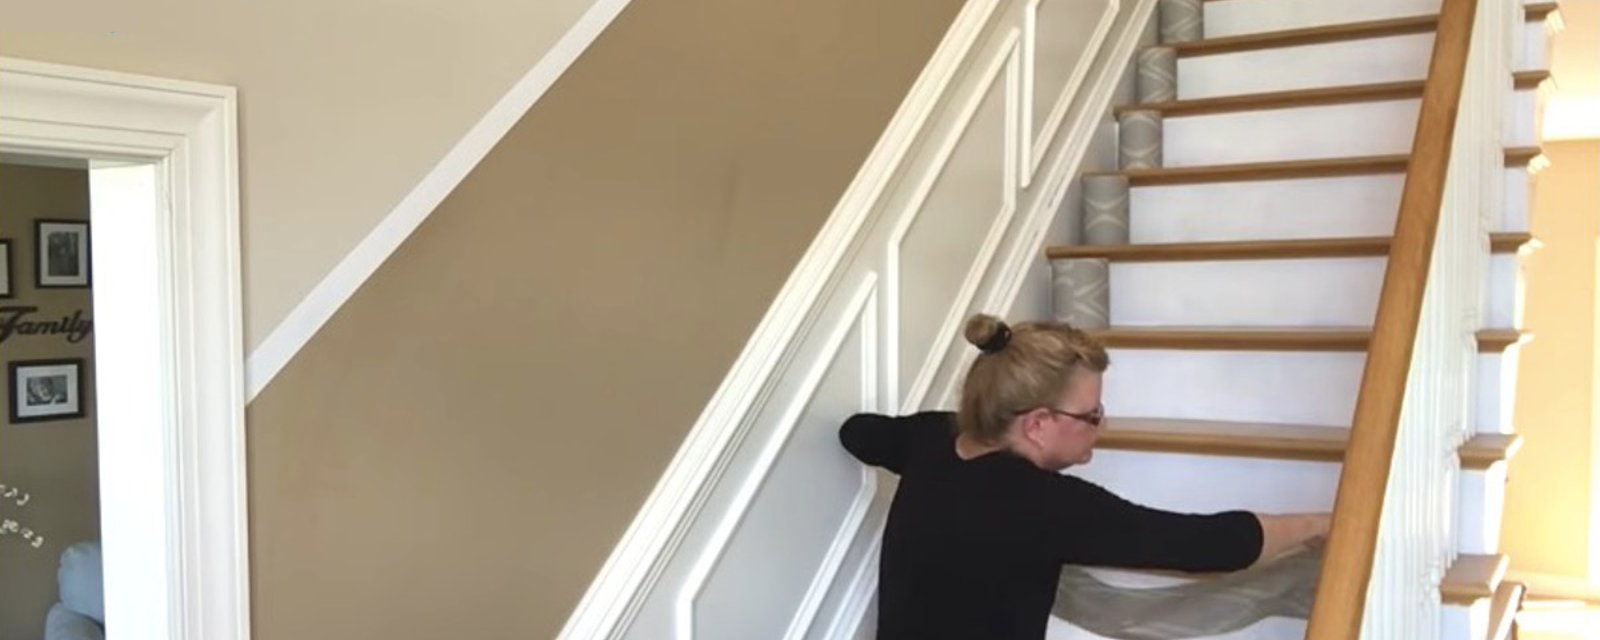 Changer le look d'un escalier avec du papier peint! 